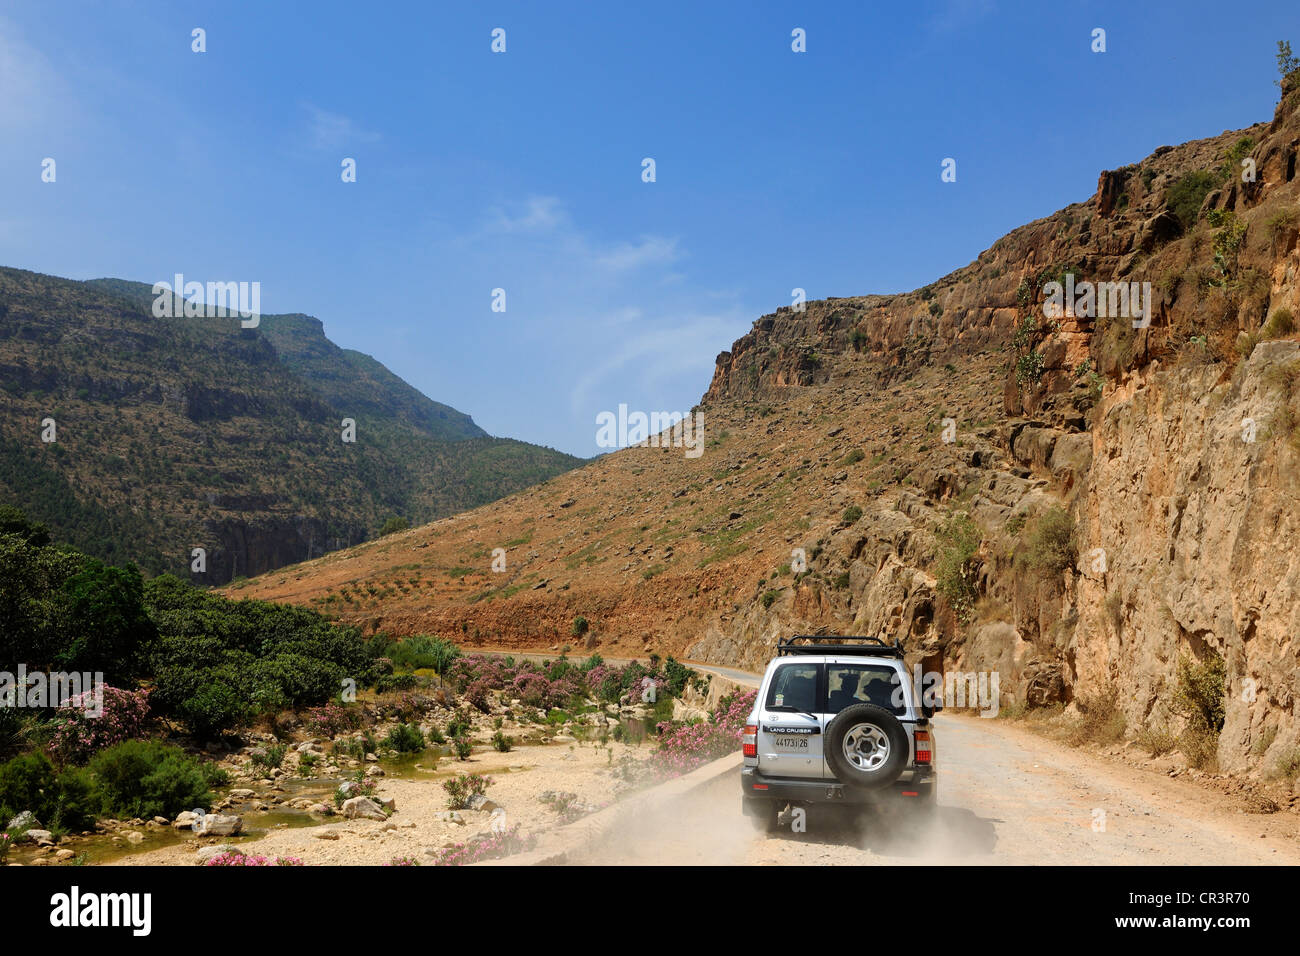 Maroc, Région de l'Oriental, du Massif du Rif, Beni Snassen (Ayt Iznassen) montagnes dans le nord-est, les quatre roues motrices sur un sentier Banque D'Images